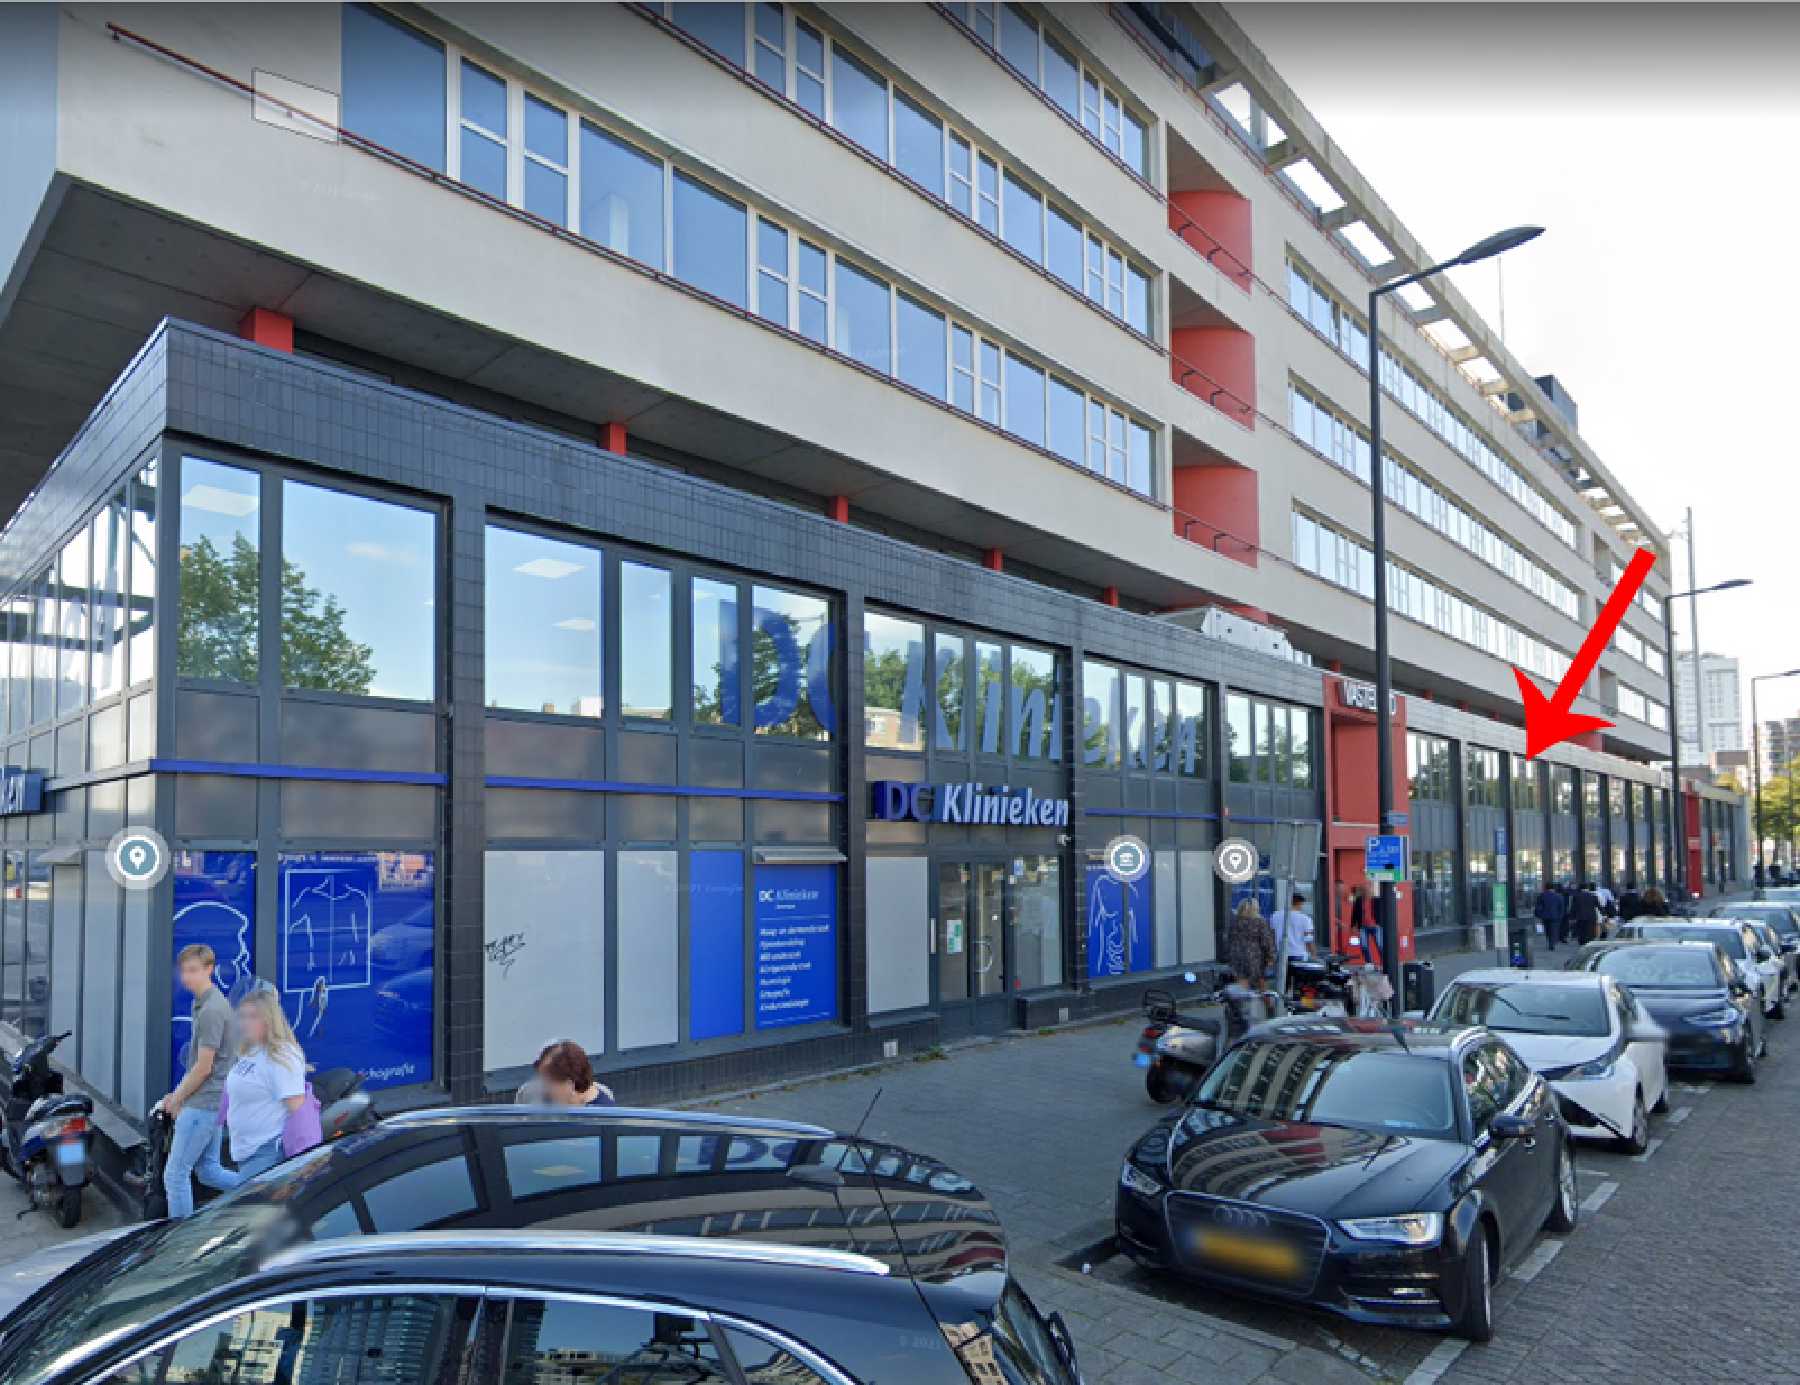 &WA architecten architect uitbreiding DC Klinieken Rotterdam